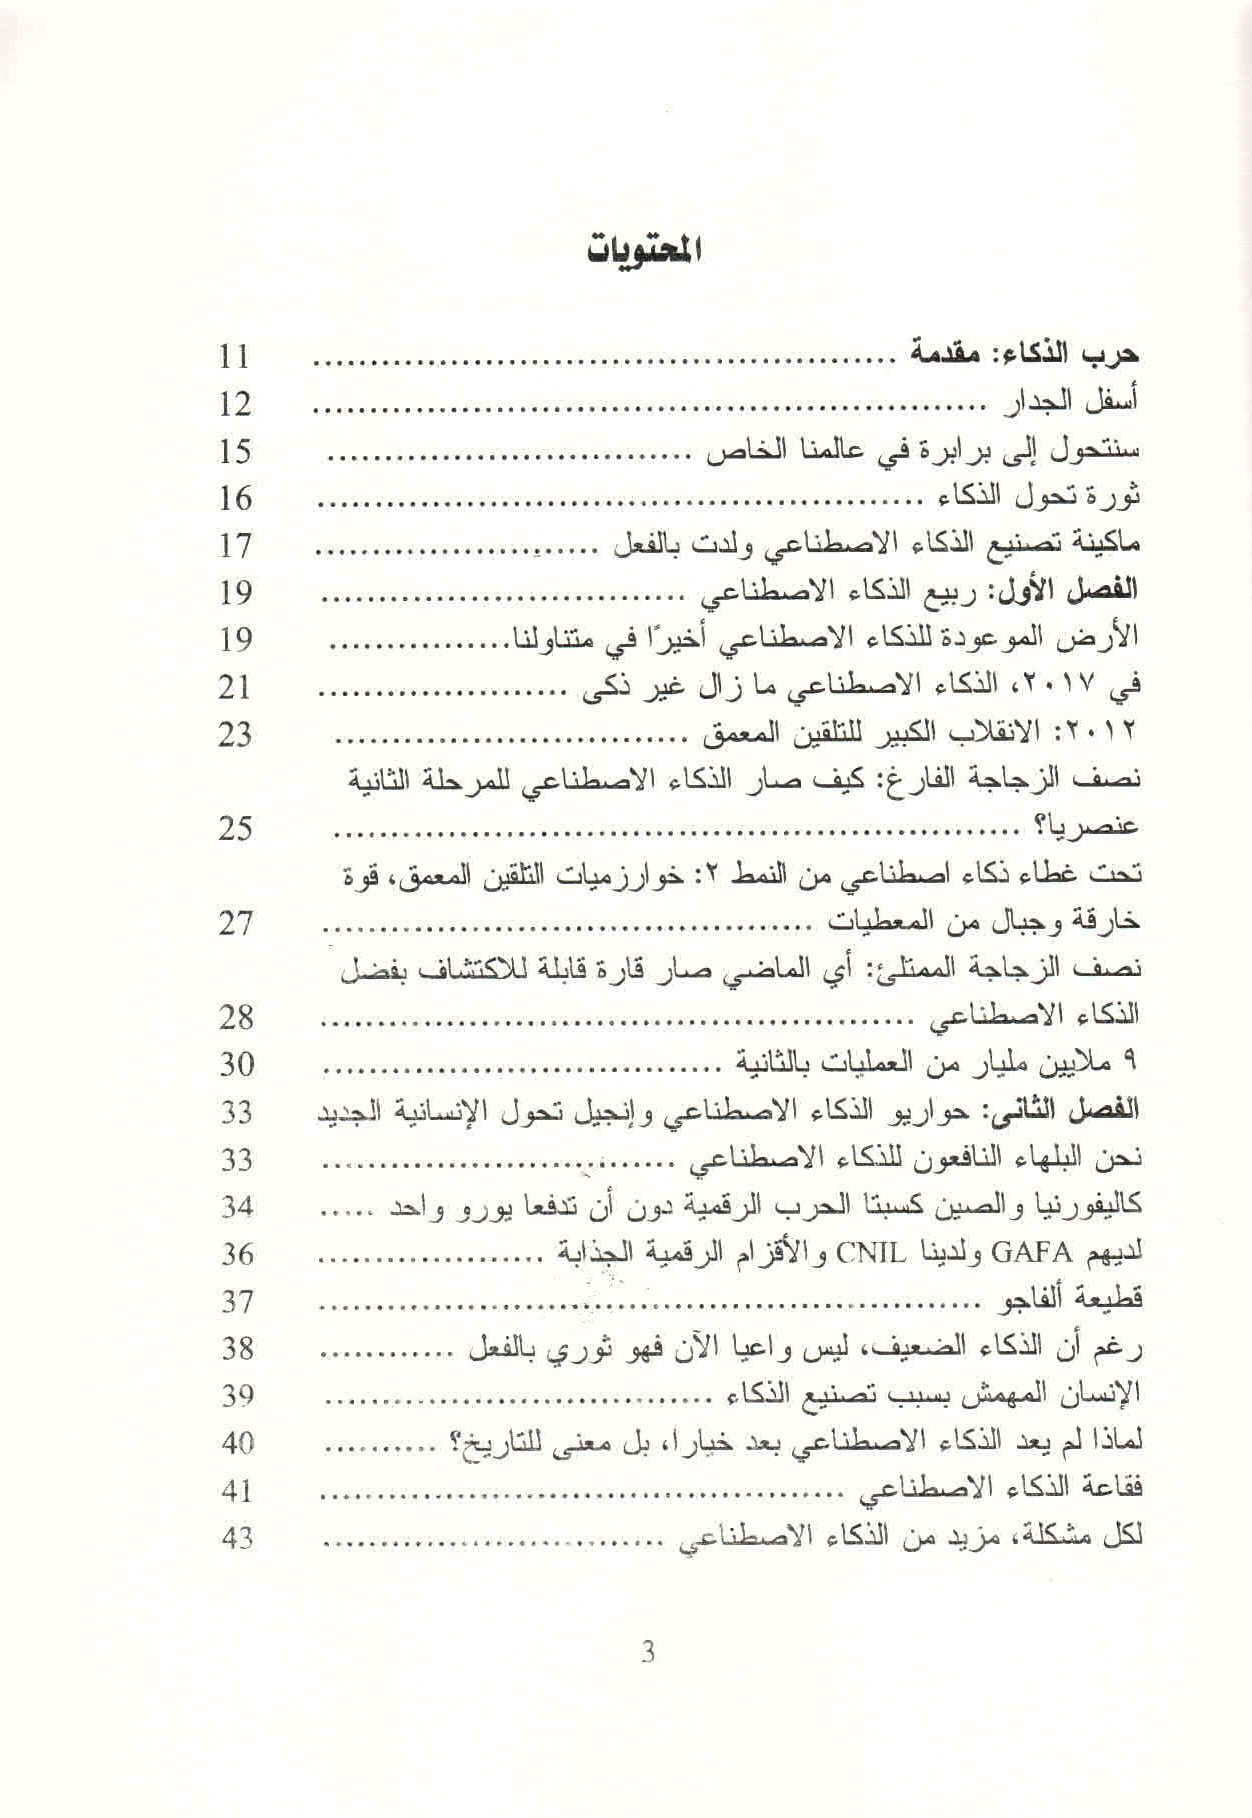 ص. 3 قائمة محتويات كتاب حرب الذكاء.